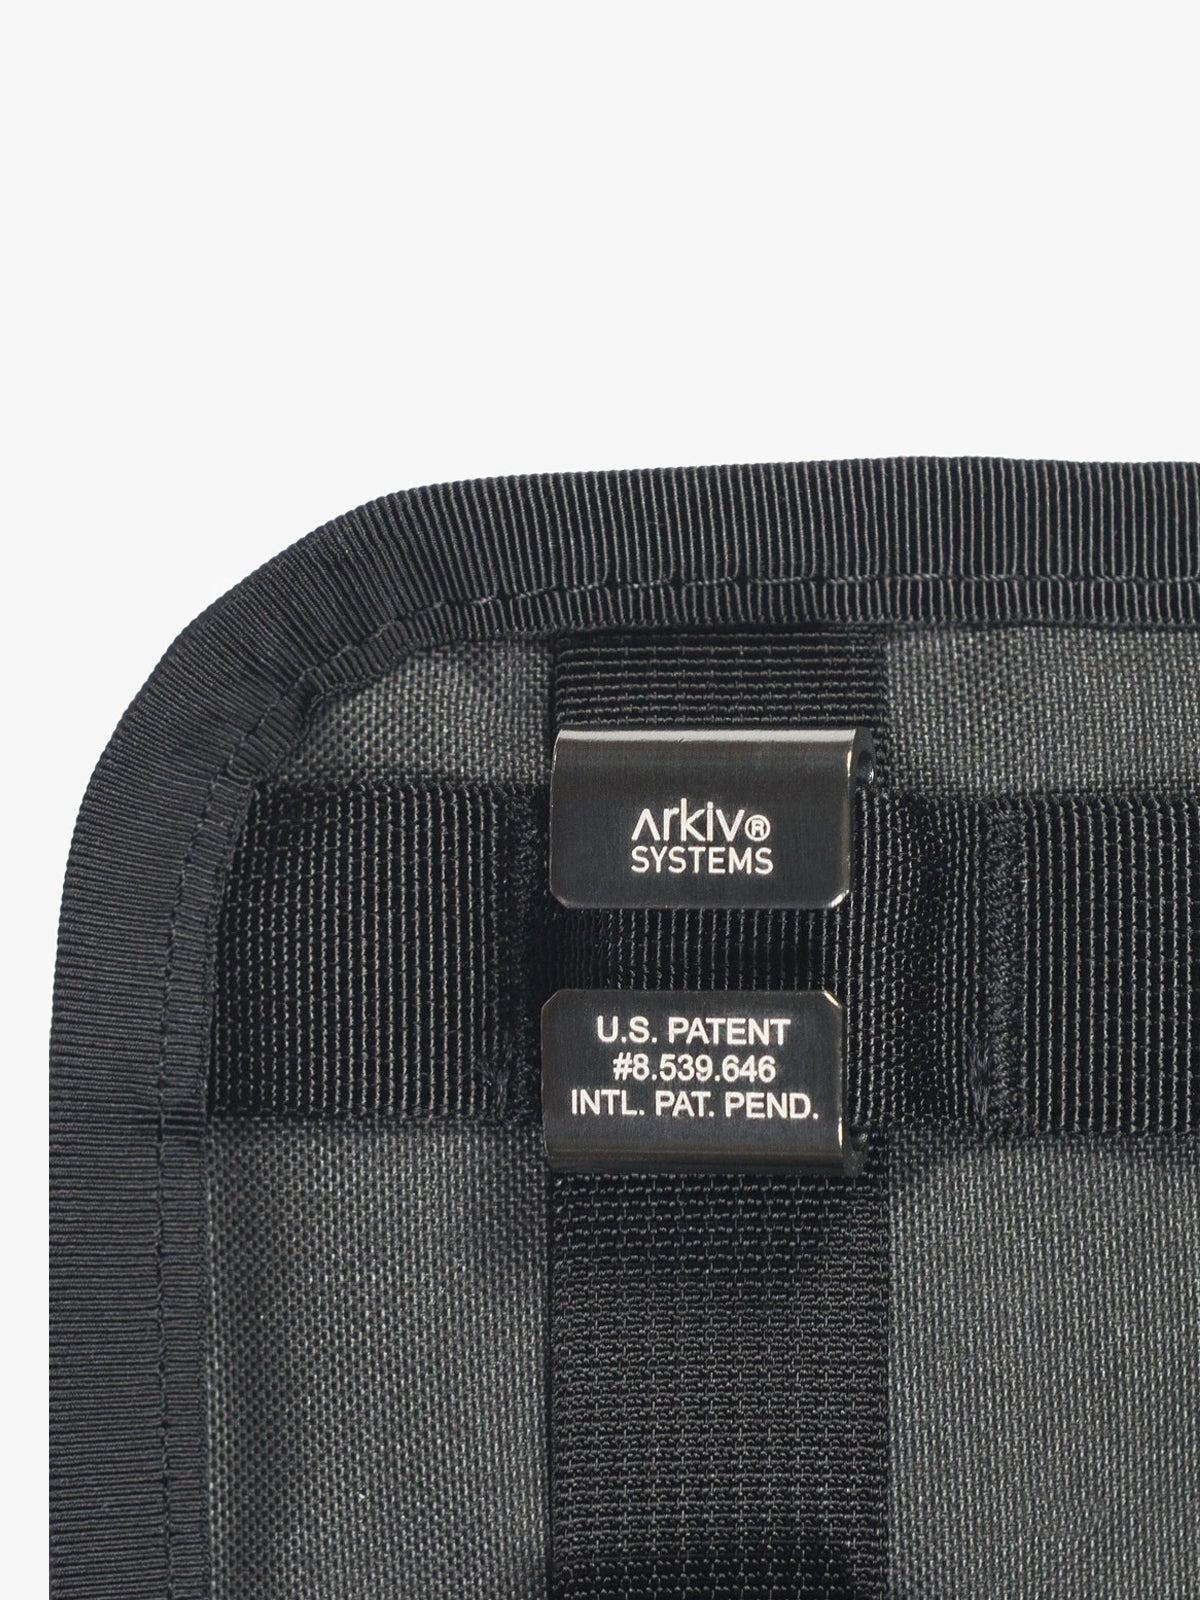 Arkiv Vertical Rolltop Pocket von Mission Workshop - Wetterfeste Taschen & Technische Bekleidung - San Francisco & Los Angeles - Für die Ewigkeit gebaut - Garantiert